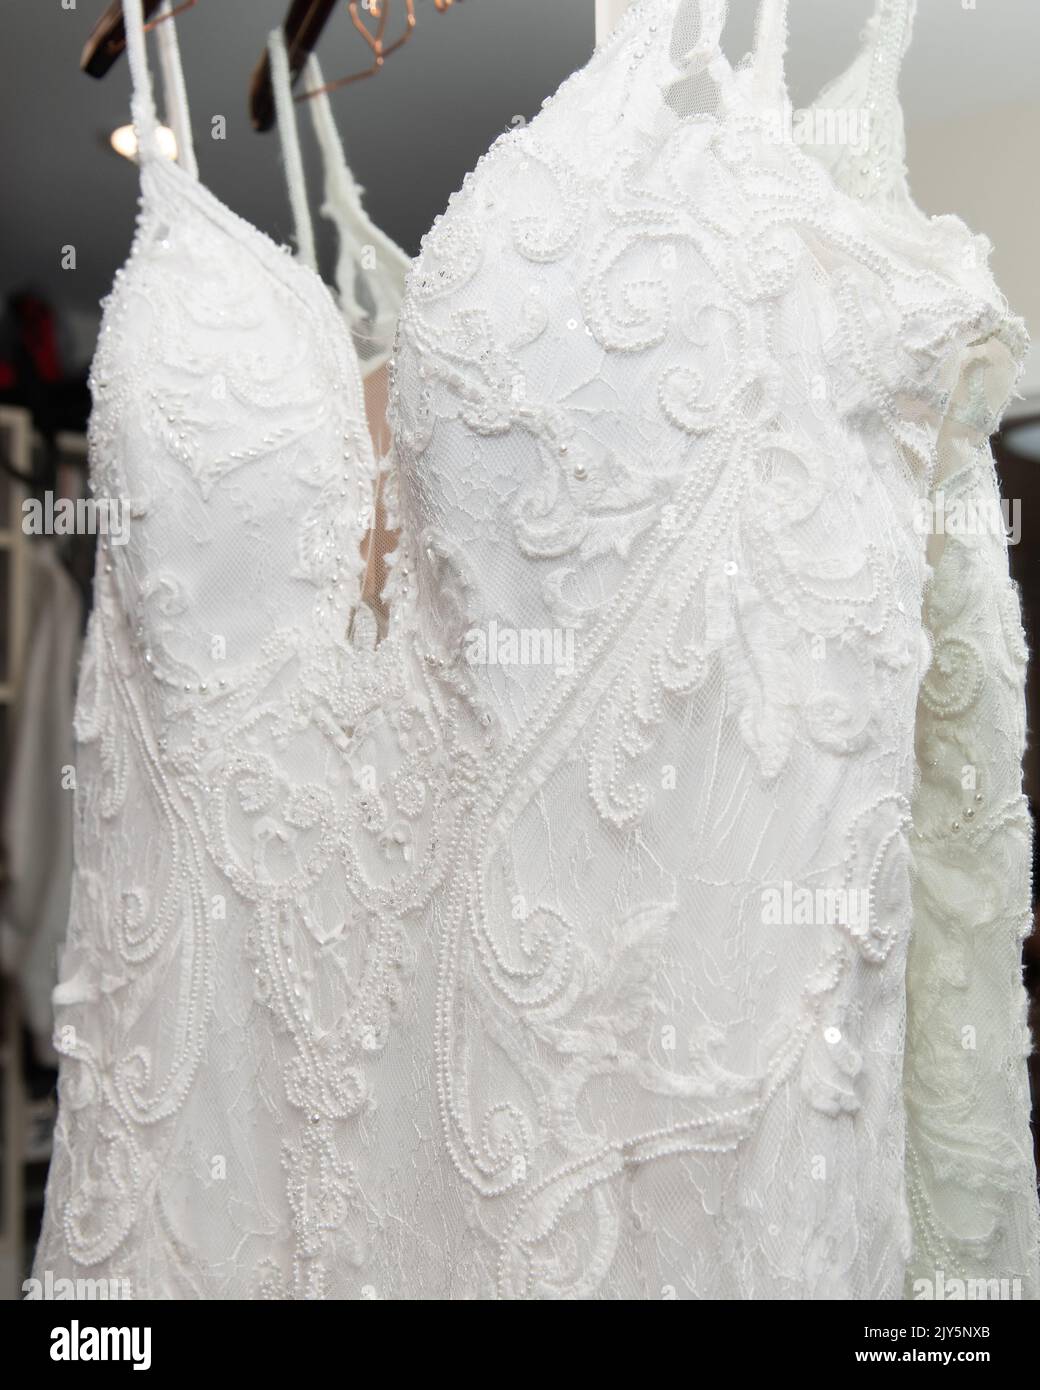 L'abito in pizzo bianco della sposa ha una collana molto dettagliata decorata con perle. Foto Stock